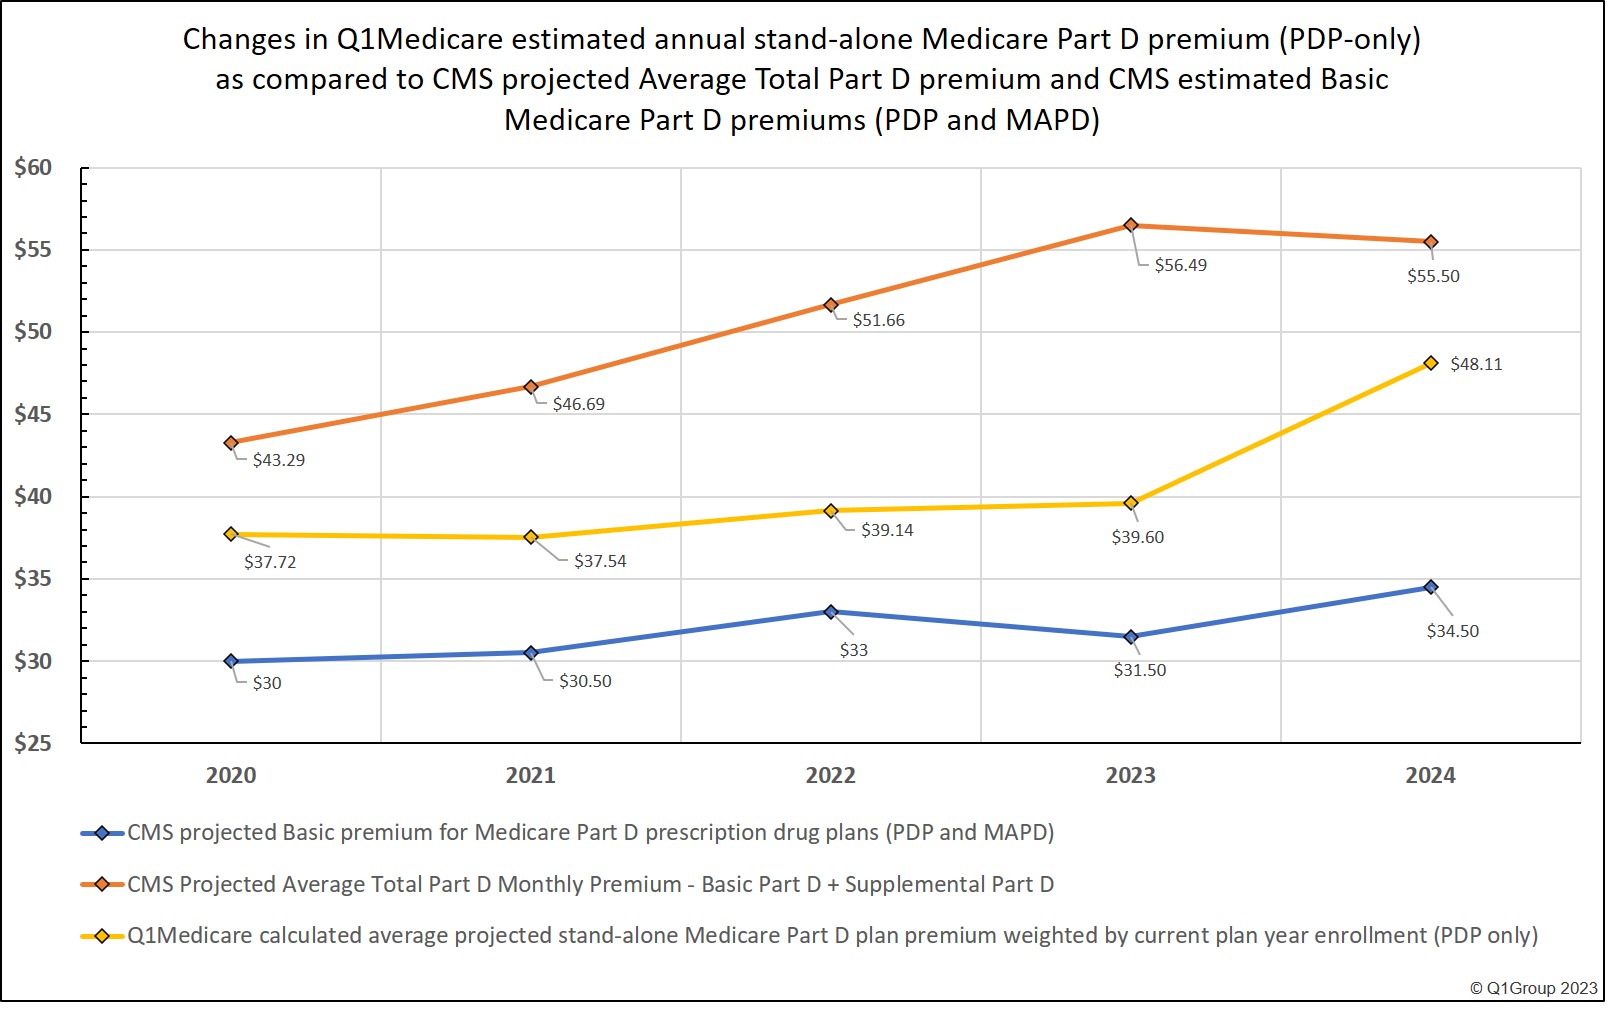 Changes to Medicare Part D premiums since 2020